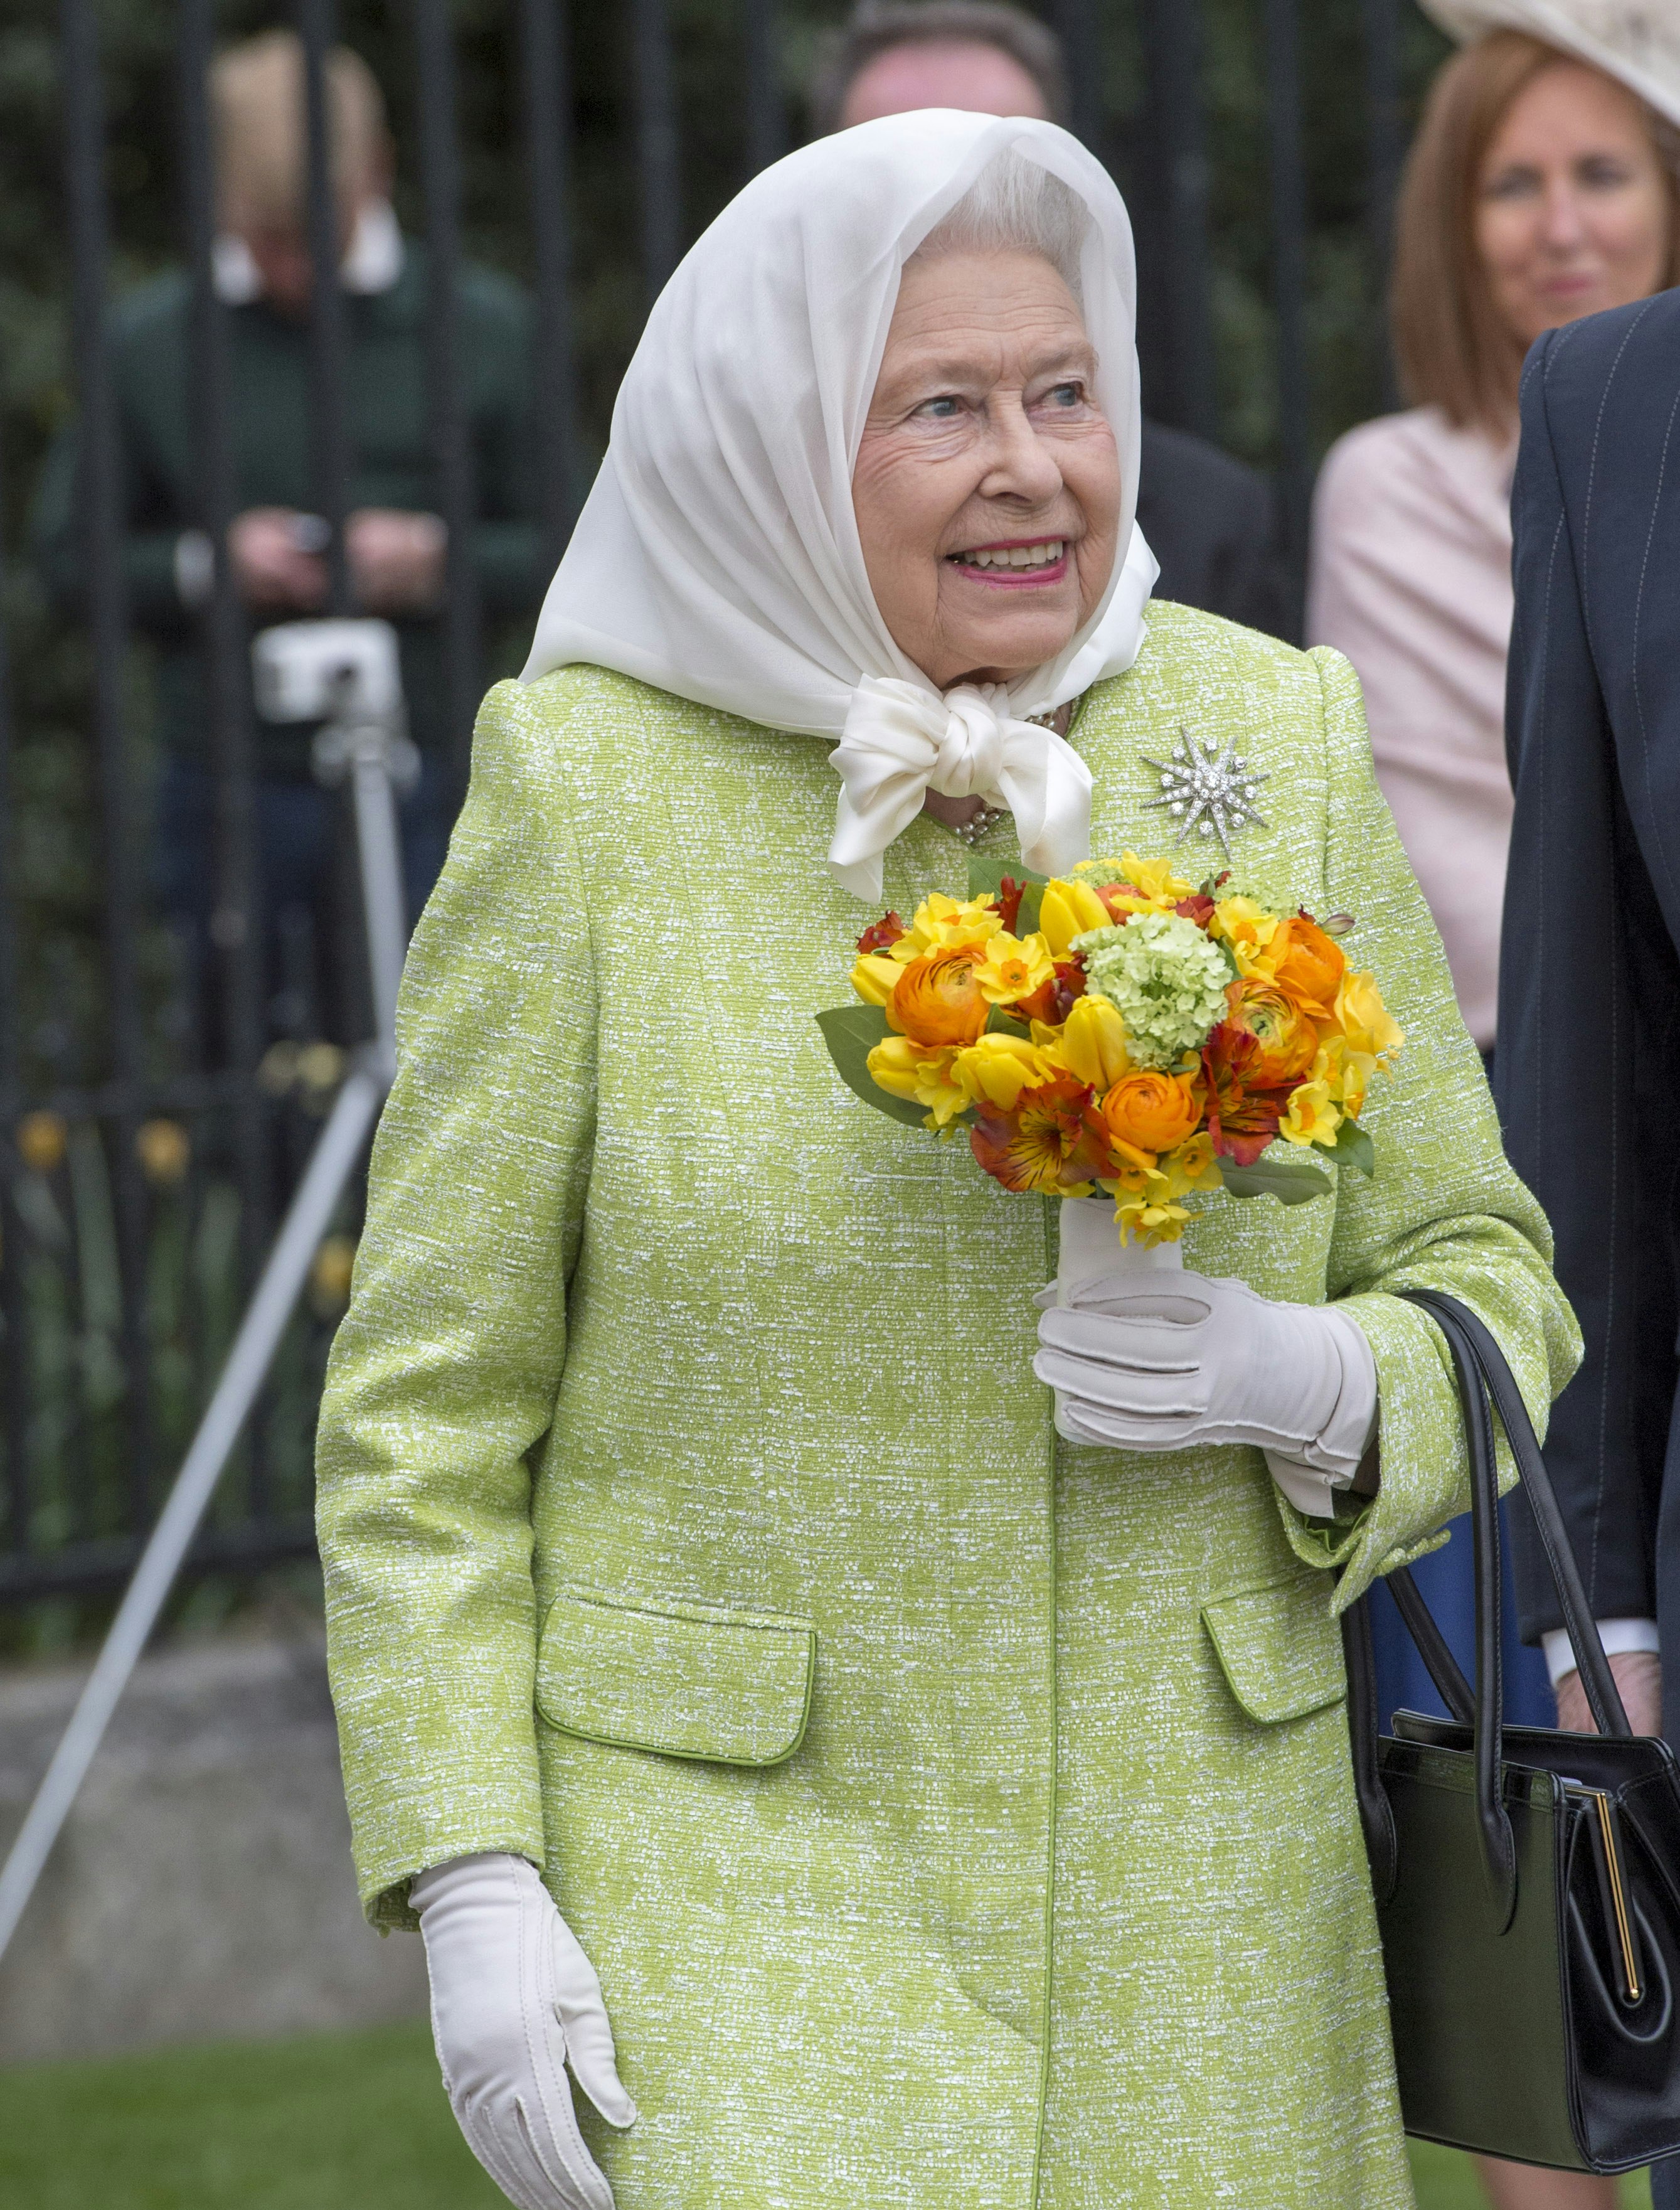 bøf lovgivning Tåget Derfor bærer dronning Elizabeth hvide handsker | BILLED-BLADET